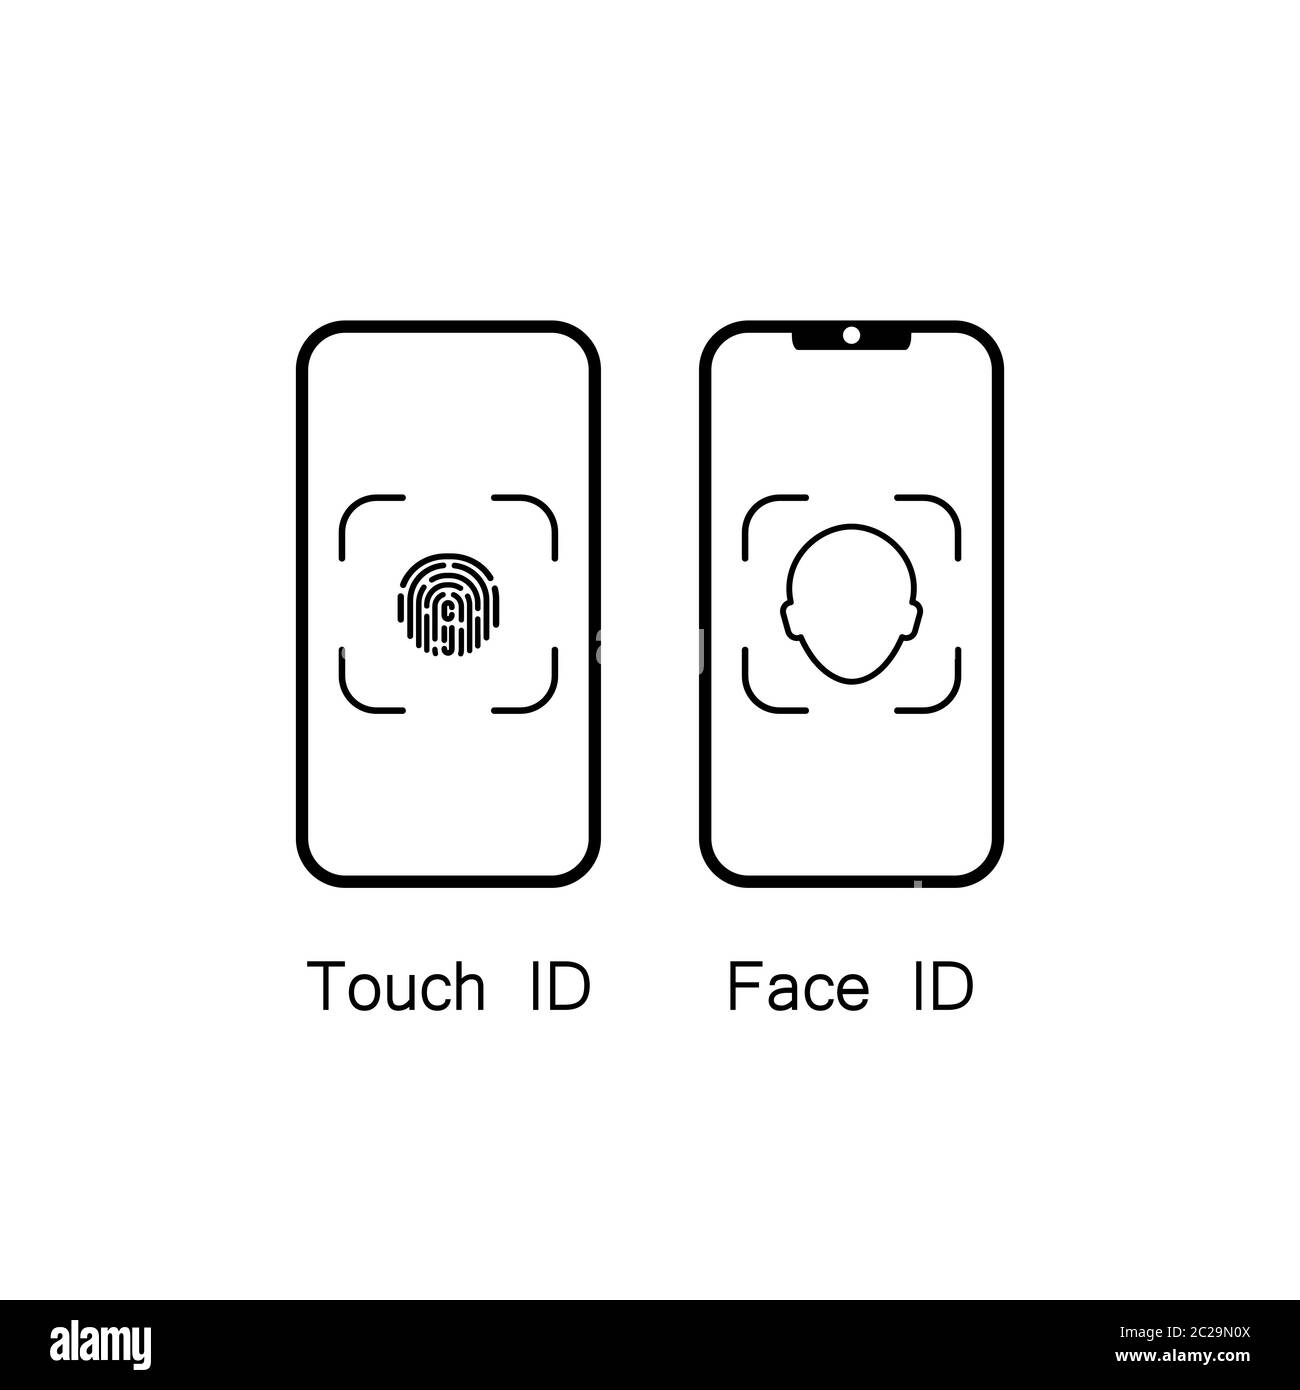 Touchez ID et ID de visage sur l'icône de l'appareil mobile. Vecteur sur fond blanc isolé. SPE 10. Illustration de Vecteur